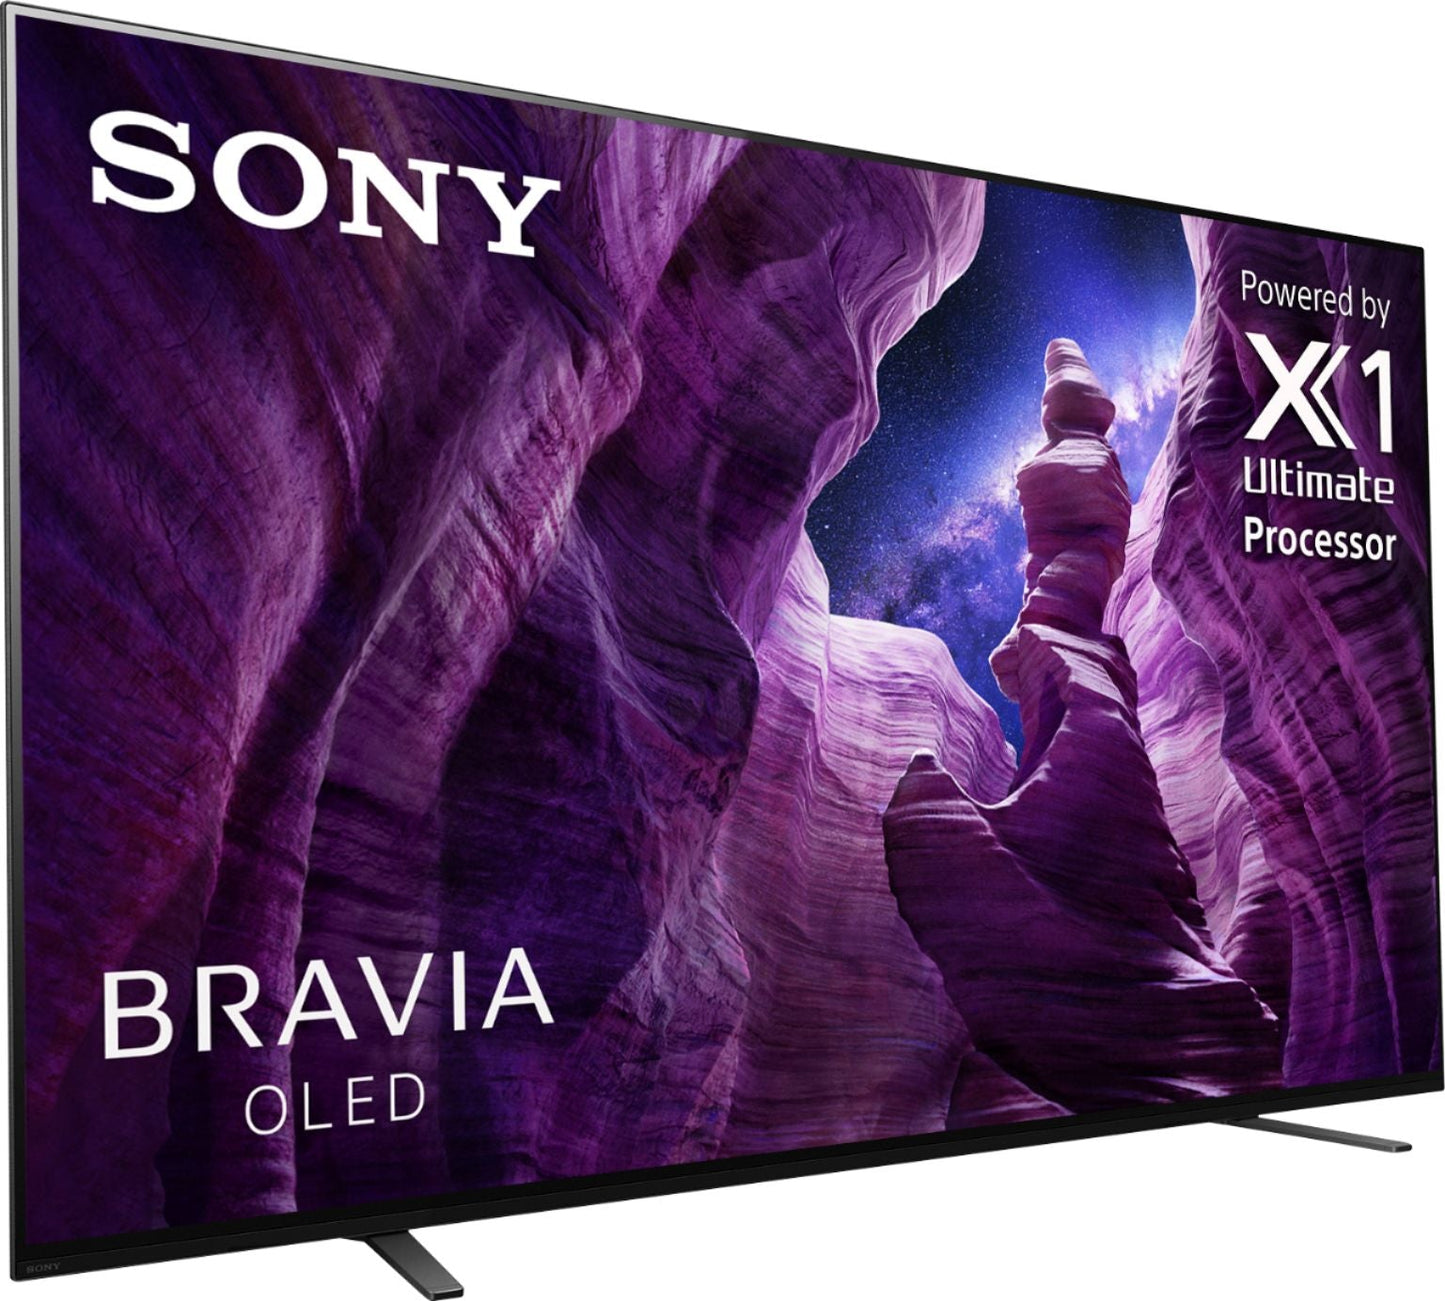 Sony A8H 55" Class HDR 4K UHD Smart OLED TV XBR55A8H